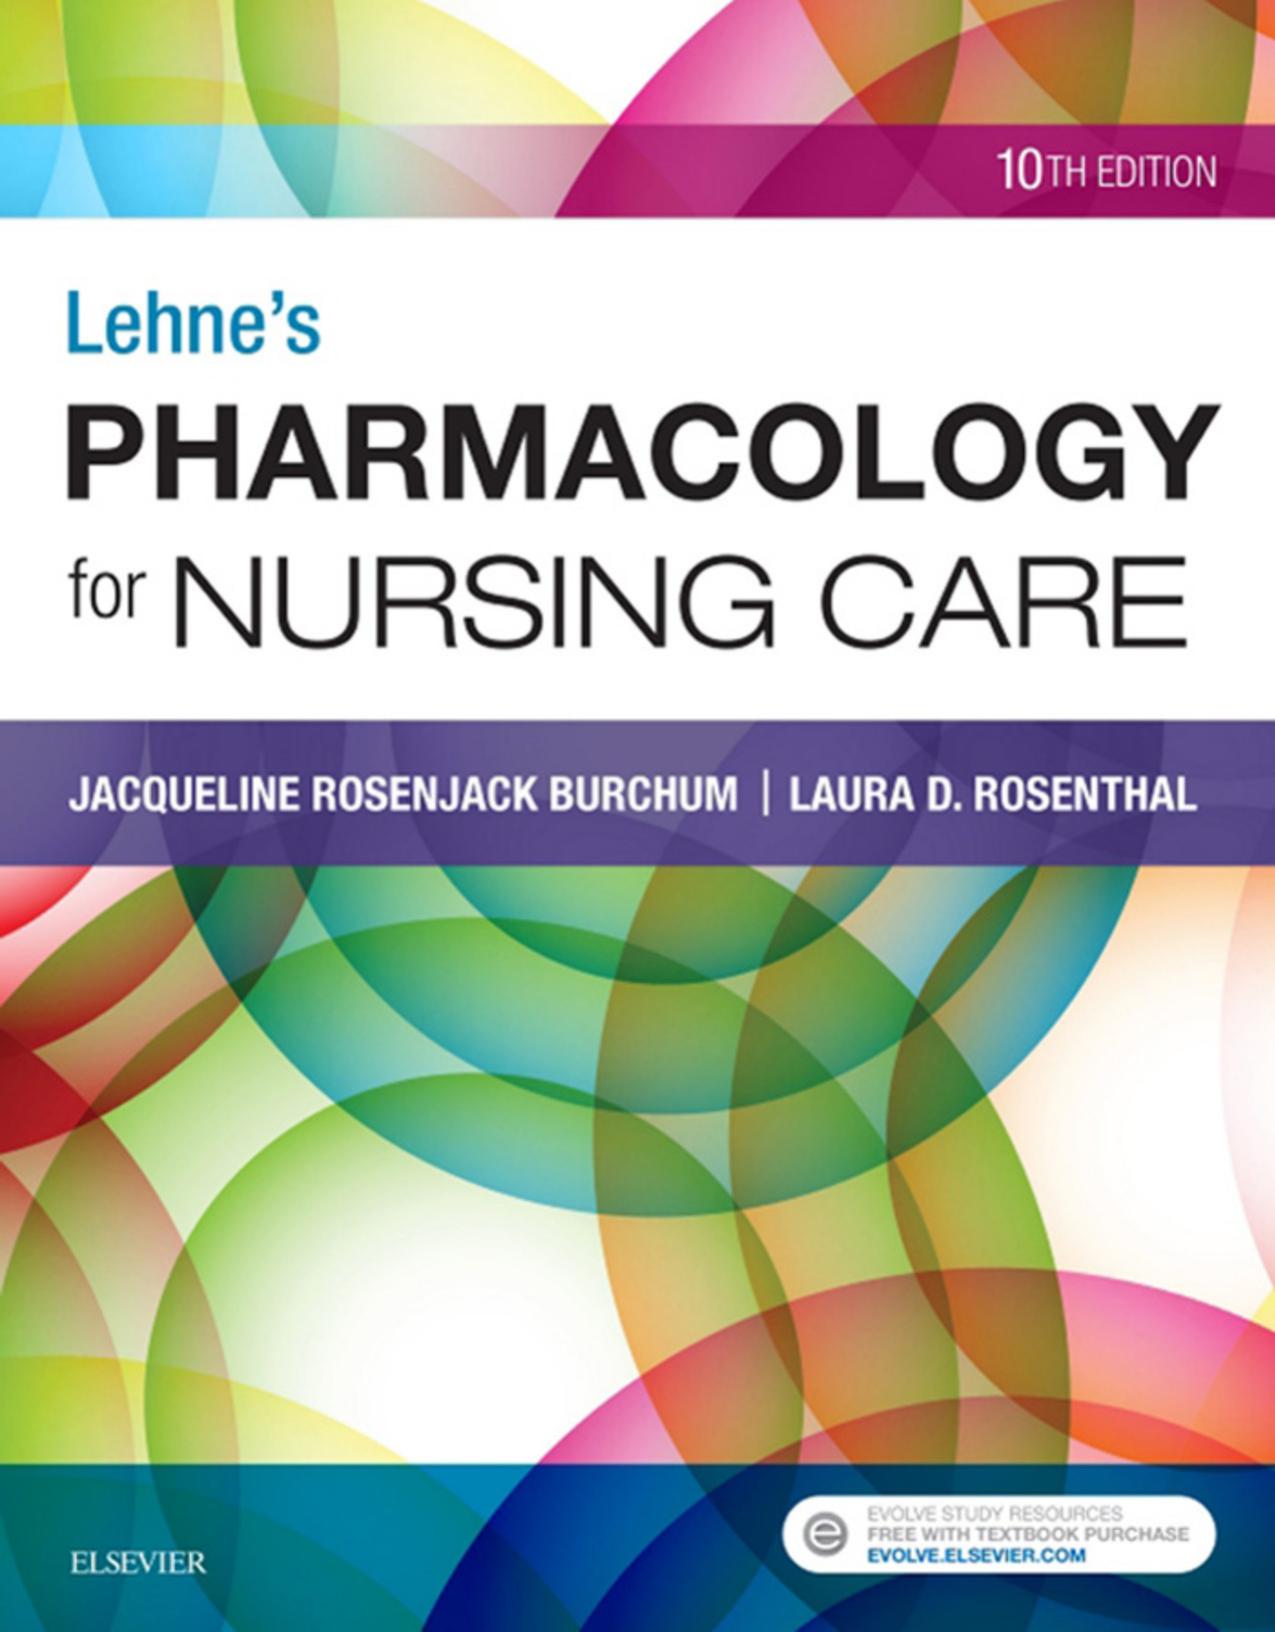 Lehne’s Pharmacology for Nursing Care